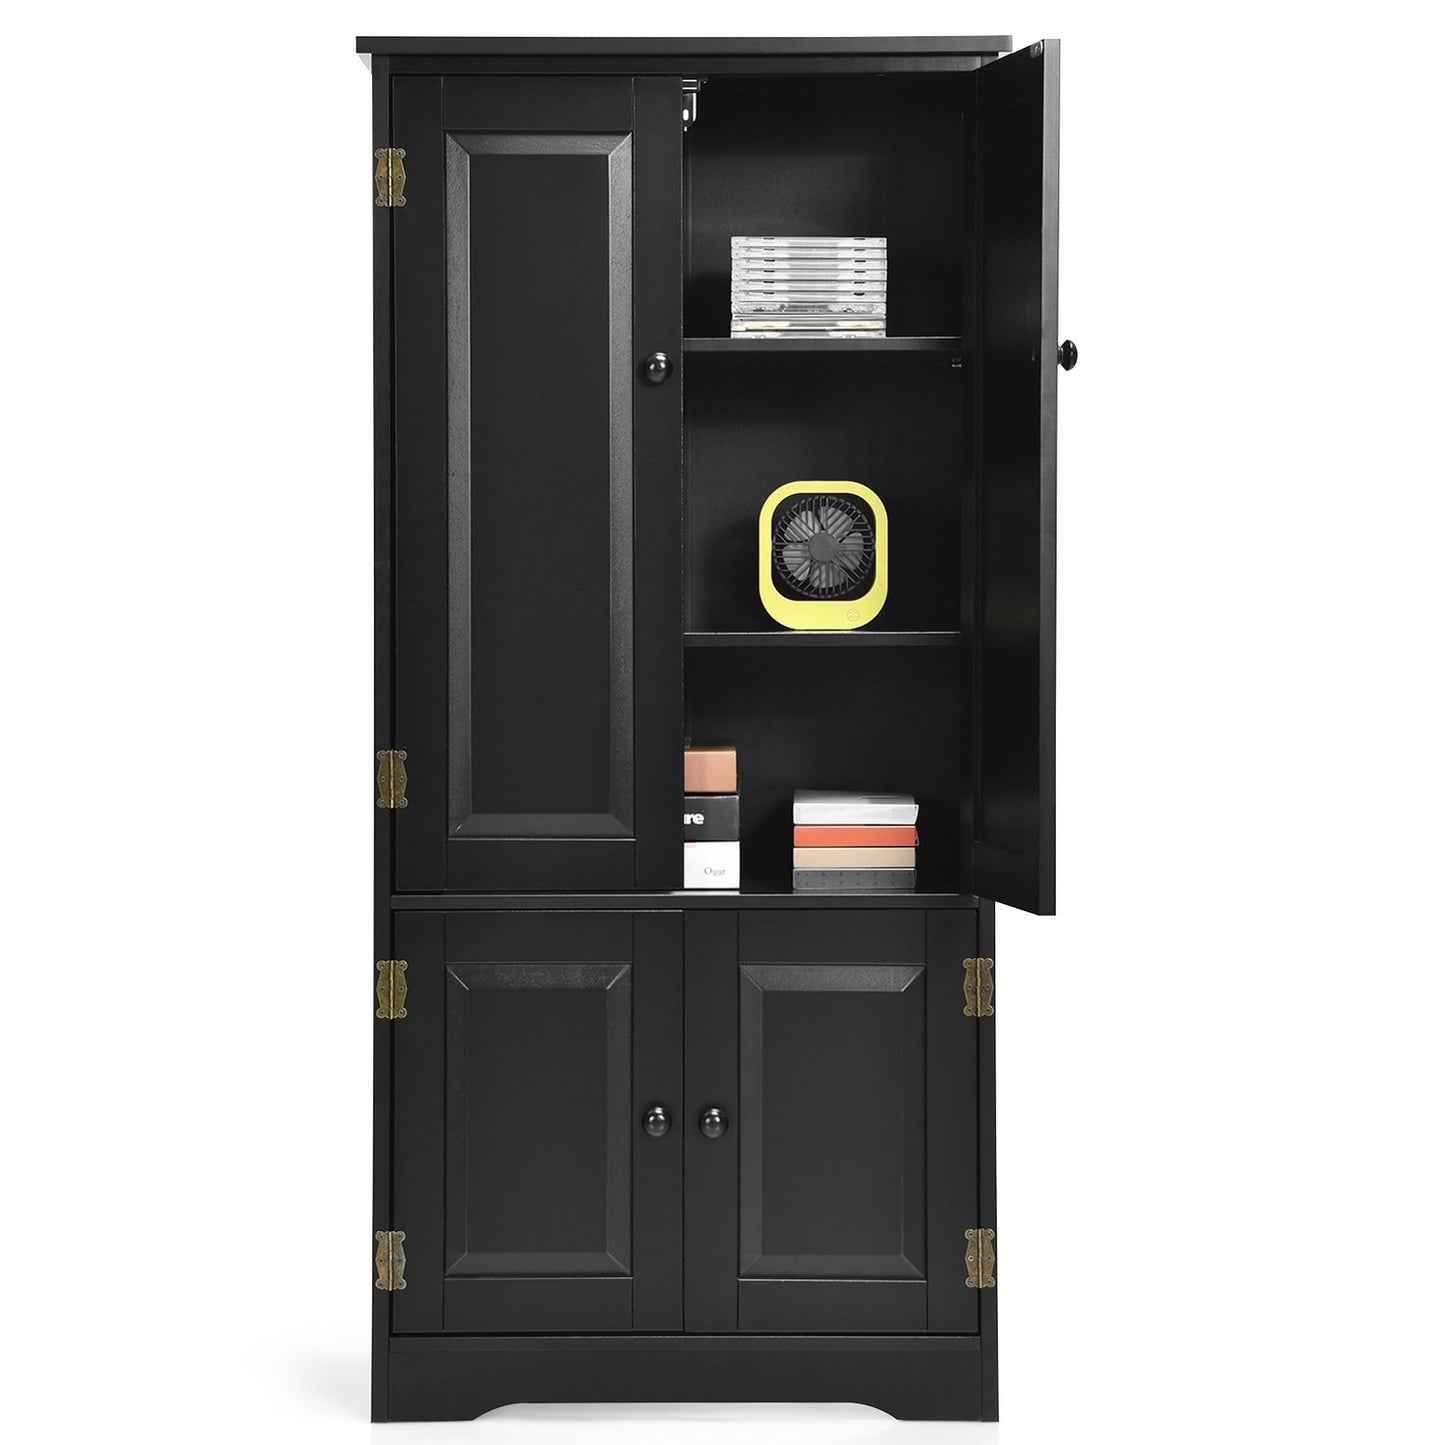 Accent Floor Storage Cabinet with Adjustable Shelves Antique 2-Door, Black - Gallery Canada